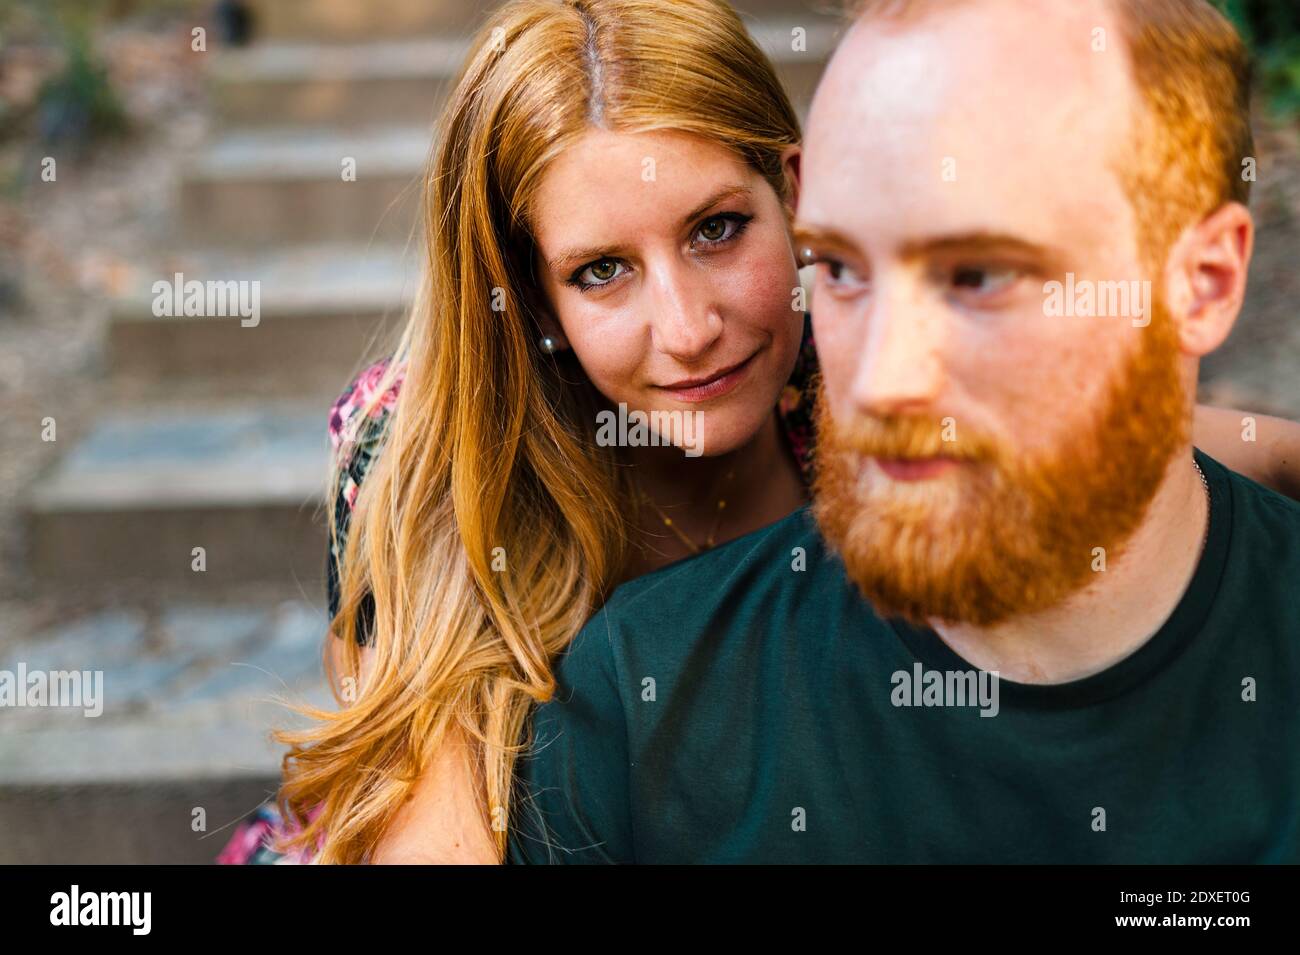 Coppia eterosessuale redhead seduta su gradini Foto Stock